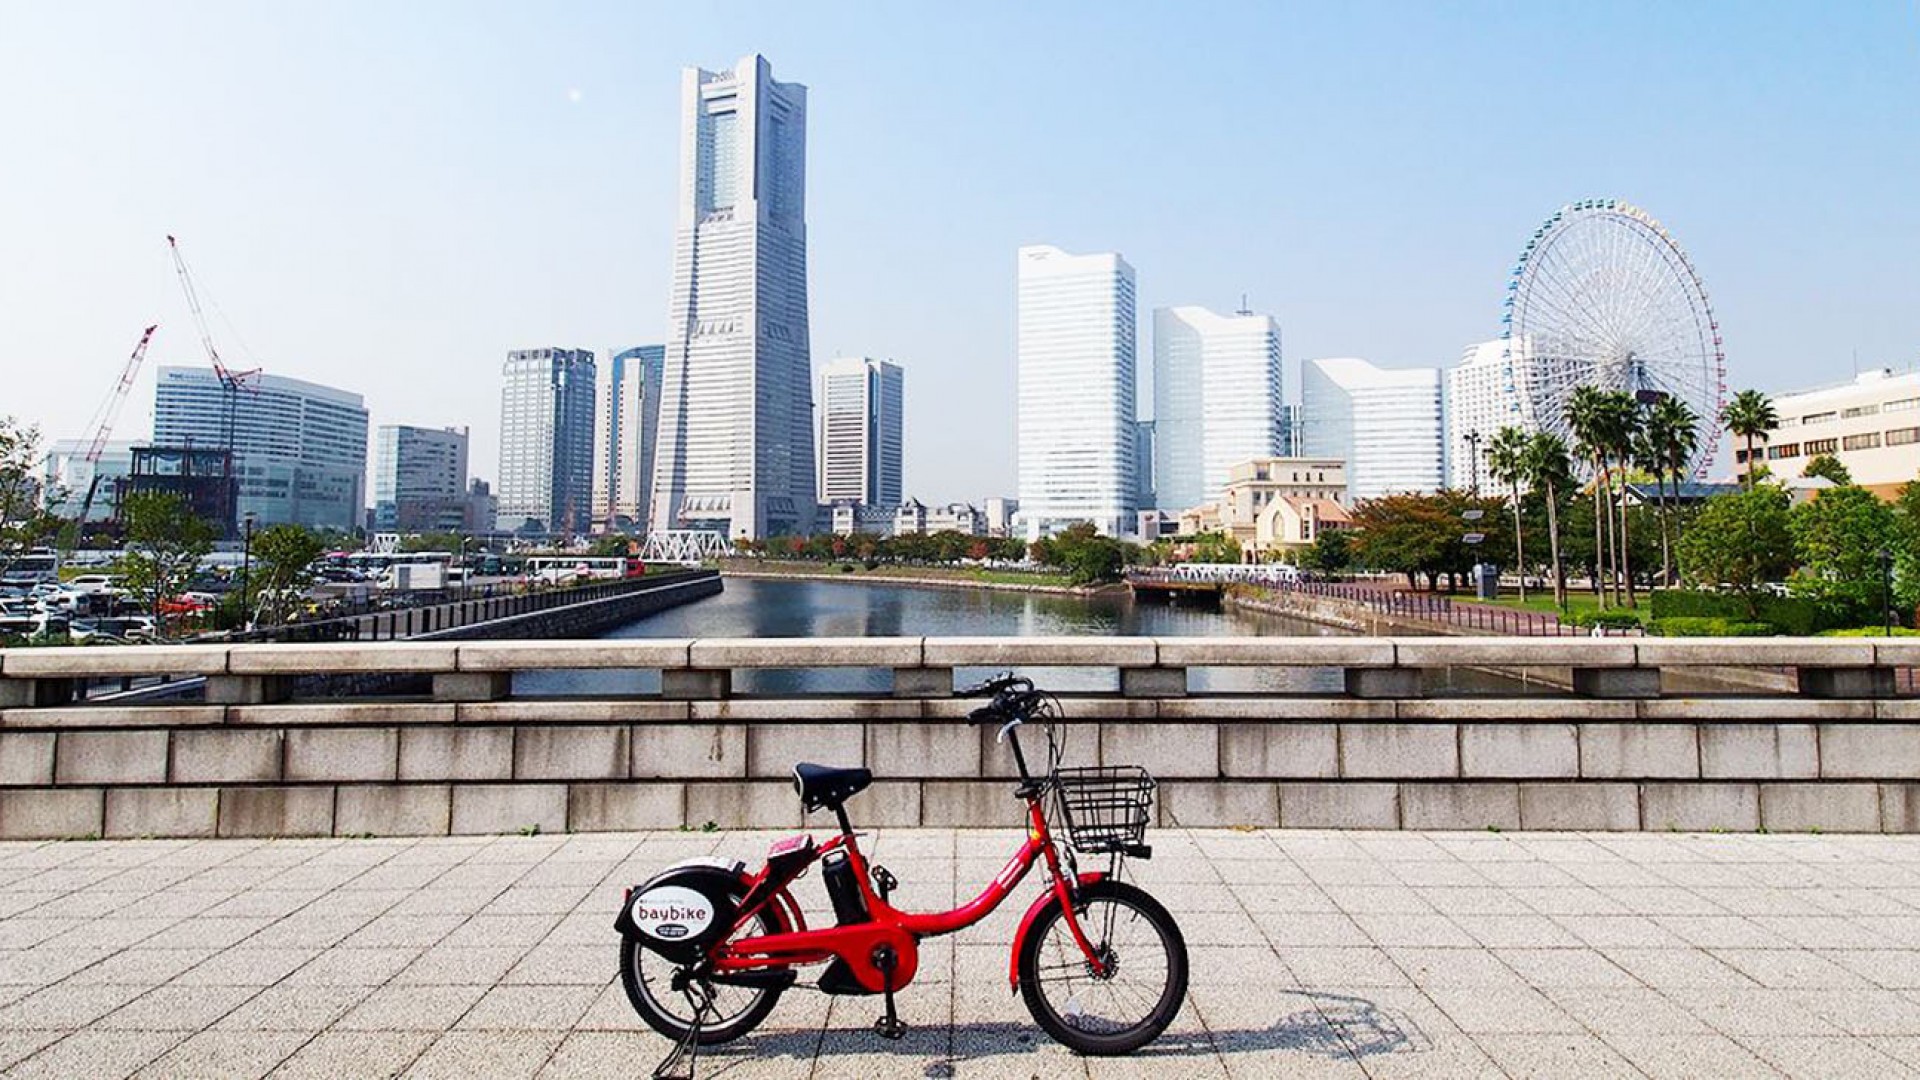 bay bike 전기자전거로 요코하마 시내 관광